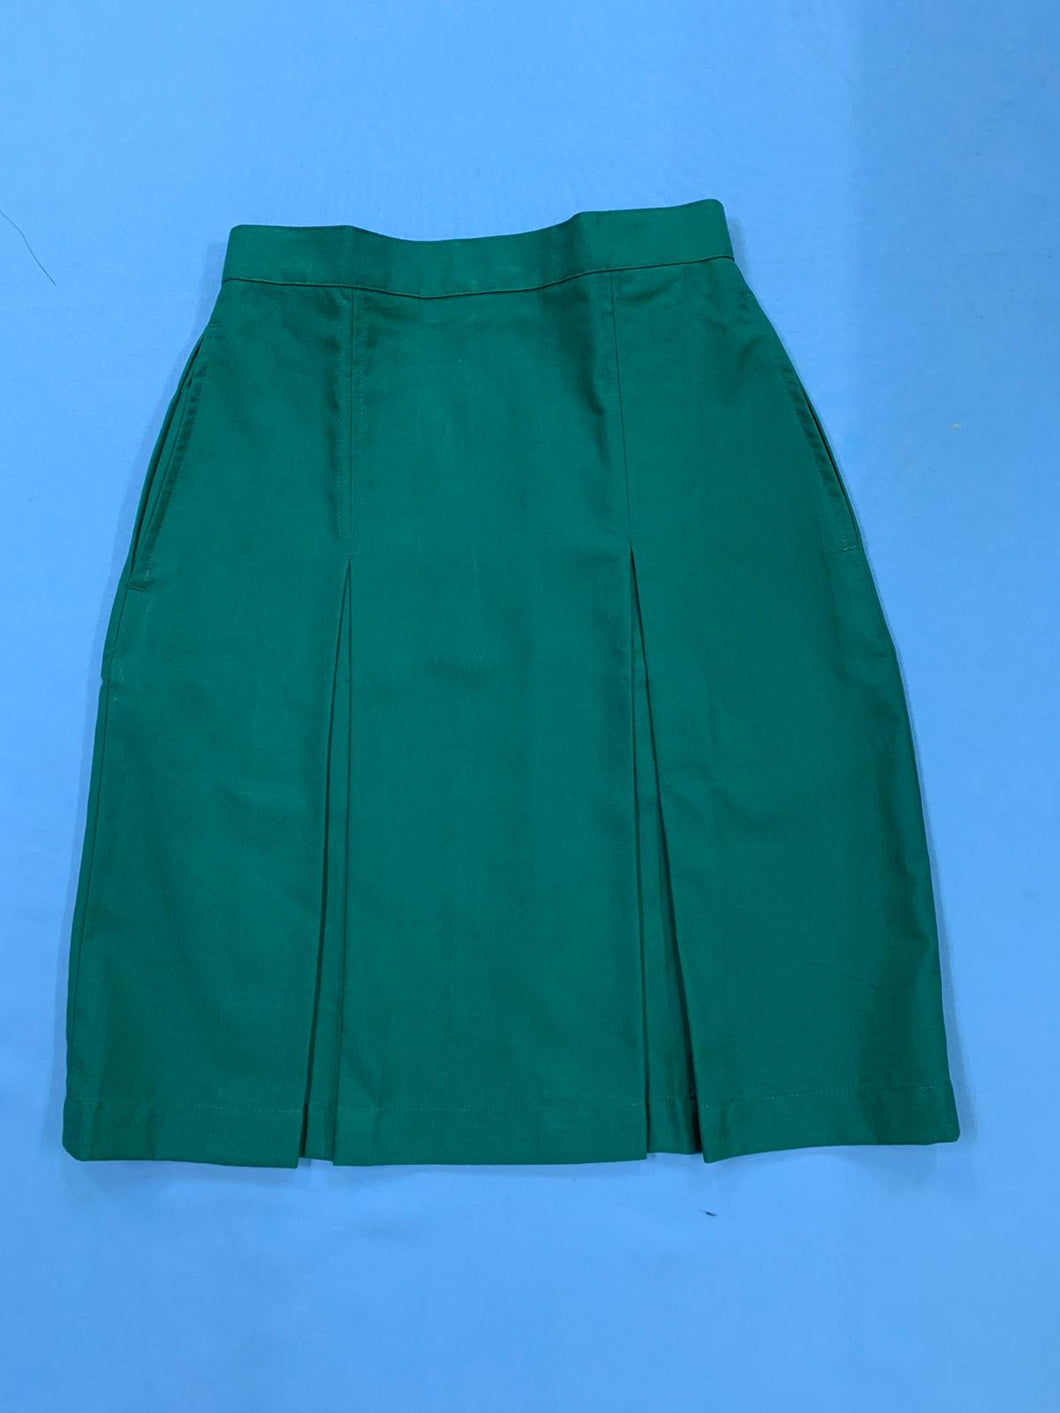 Zhonghua Skirt